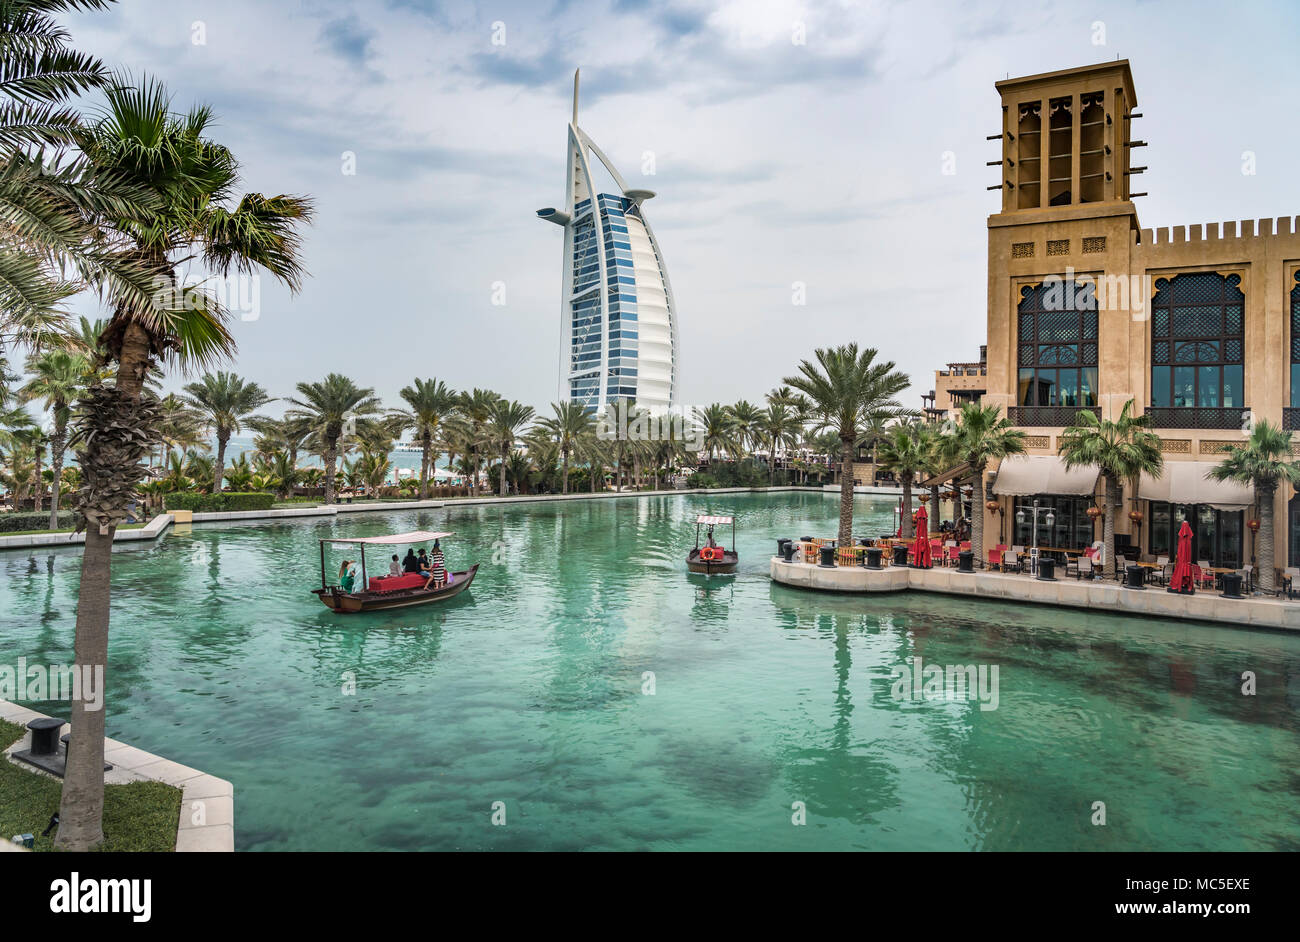 Abra bateaux dans les canaux du Souk Madinat Jumeirah à Dubaï, Émirats arabes unis, au Moyen-Orient. Banque D'Images